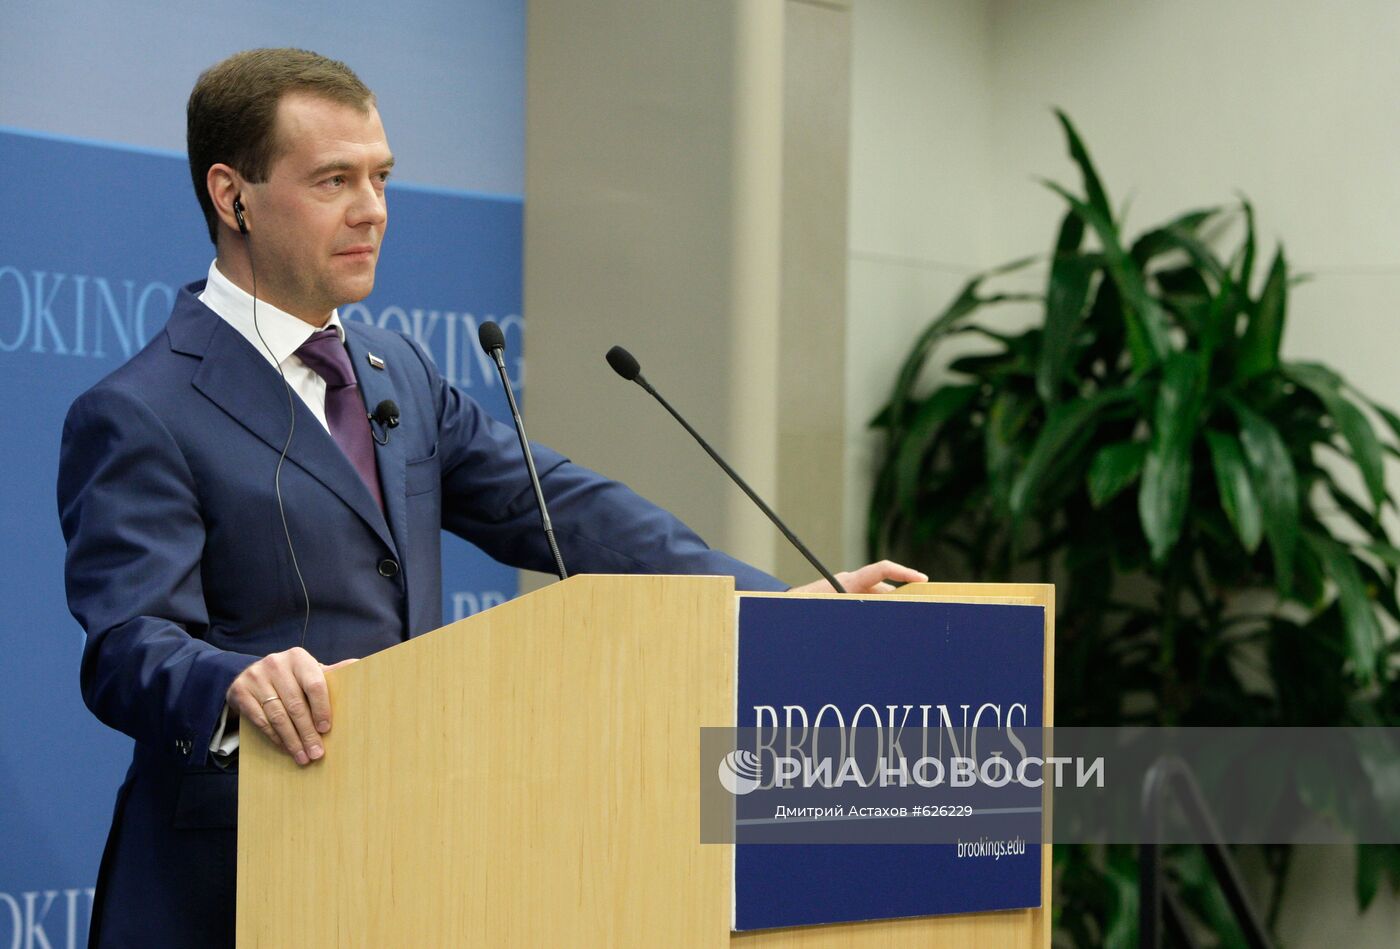 Выступление Дмитрия Медведева в Брукингском институте